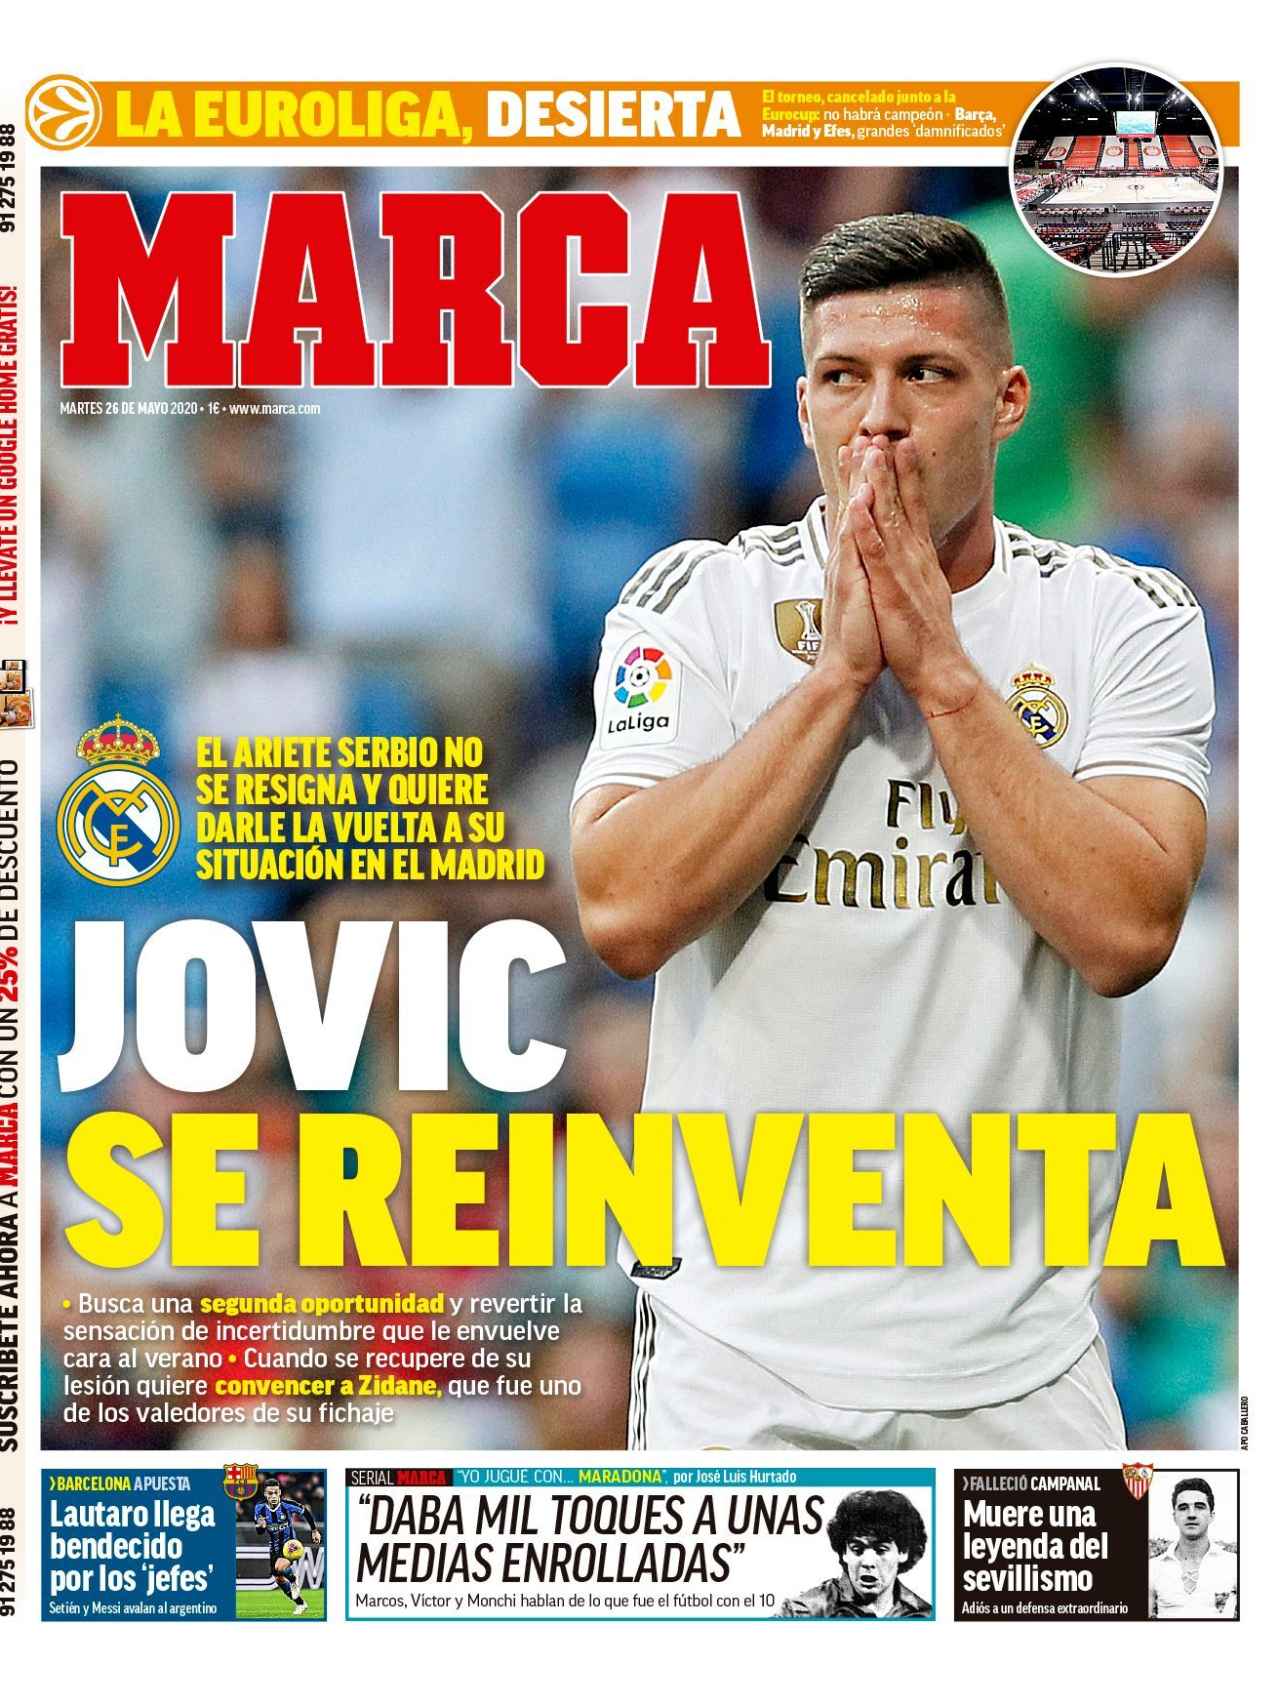 La portada del diario MARCA (25/05/2020)